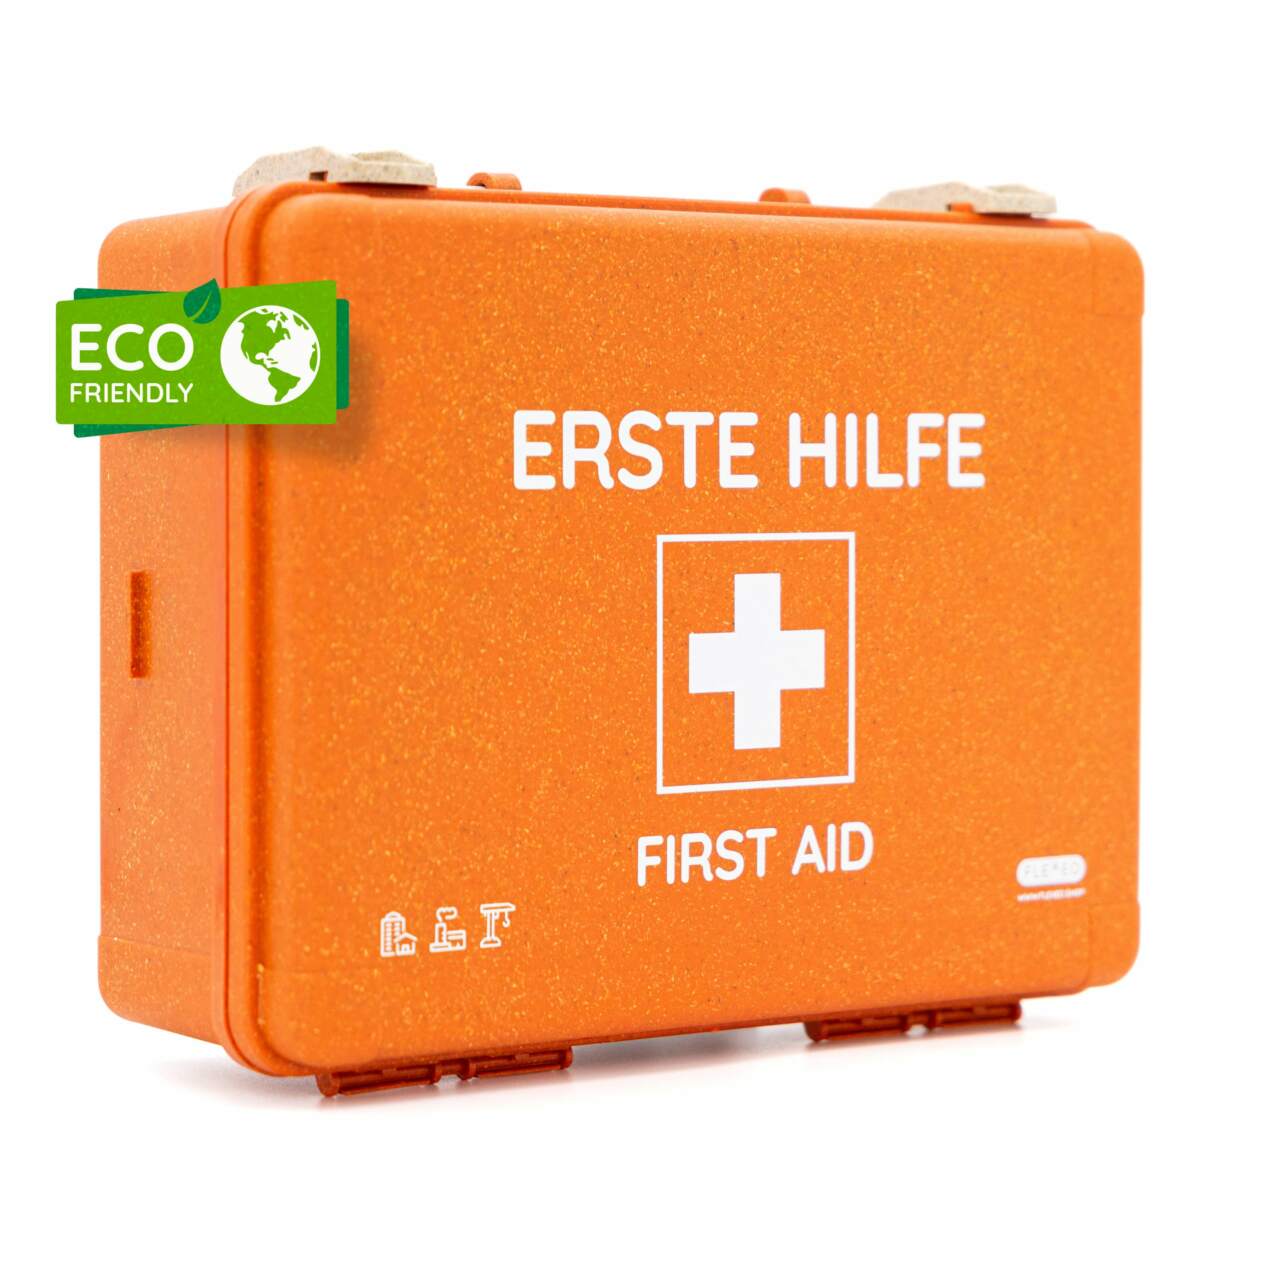 Erste-Hilfe-Notfallrucksack, gefüllt DIN 13157 online kaufen